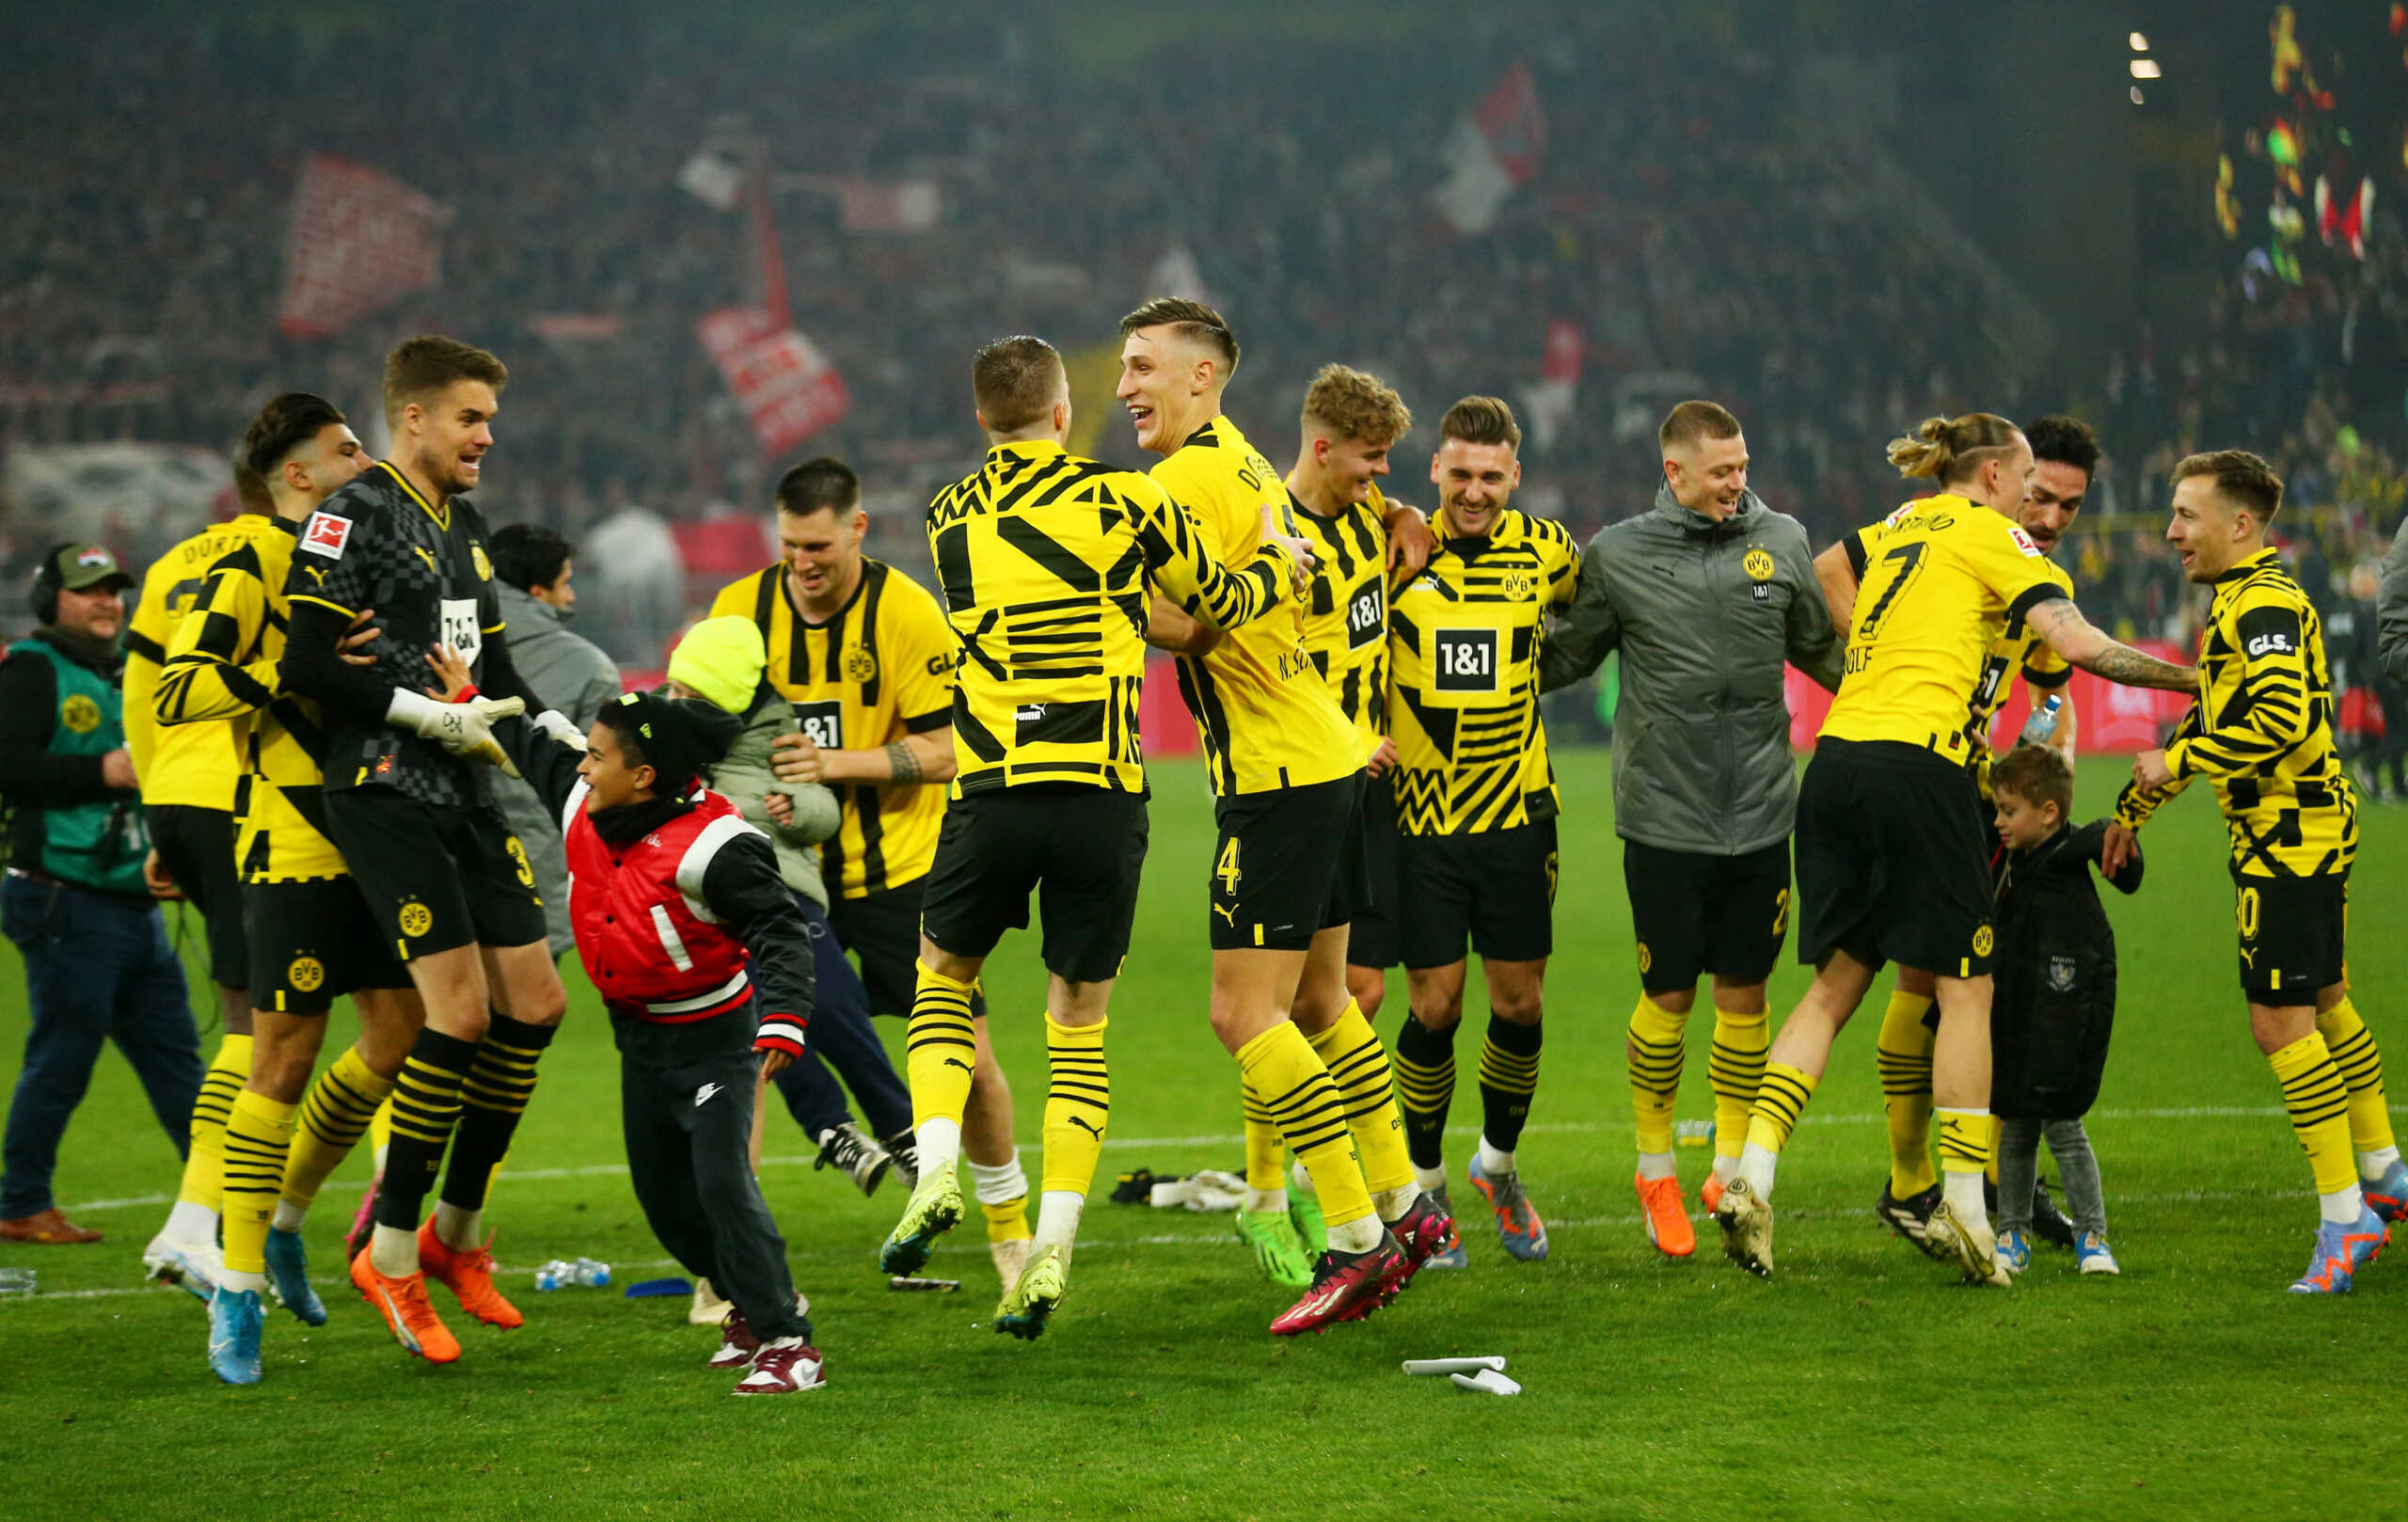 Ντόρτμουντ – Κολωνία 6-1: Άνετη νίκη και κορυφή στη Bundesliga